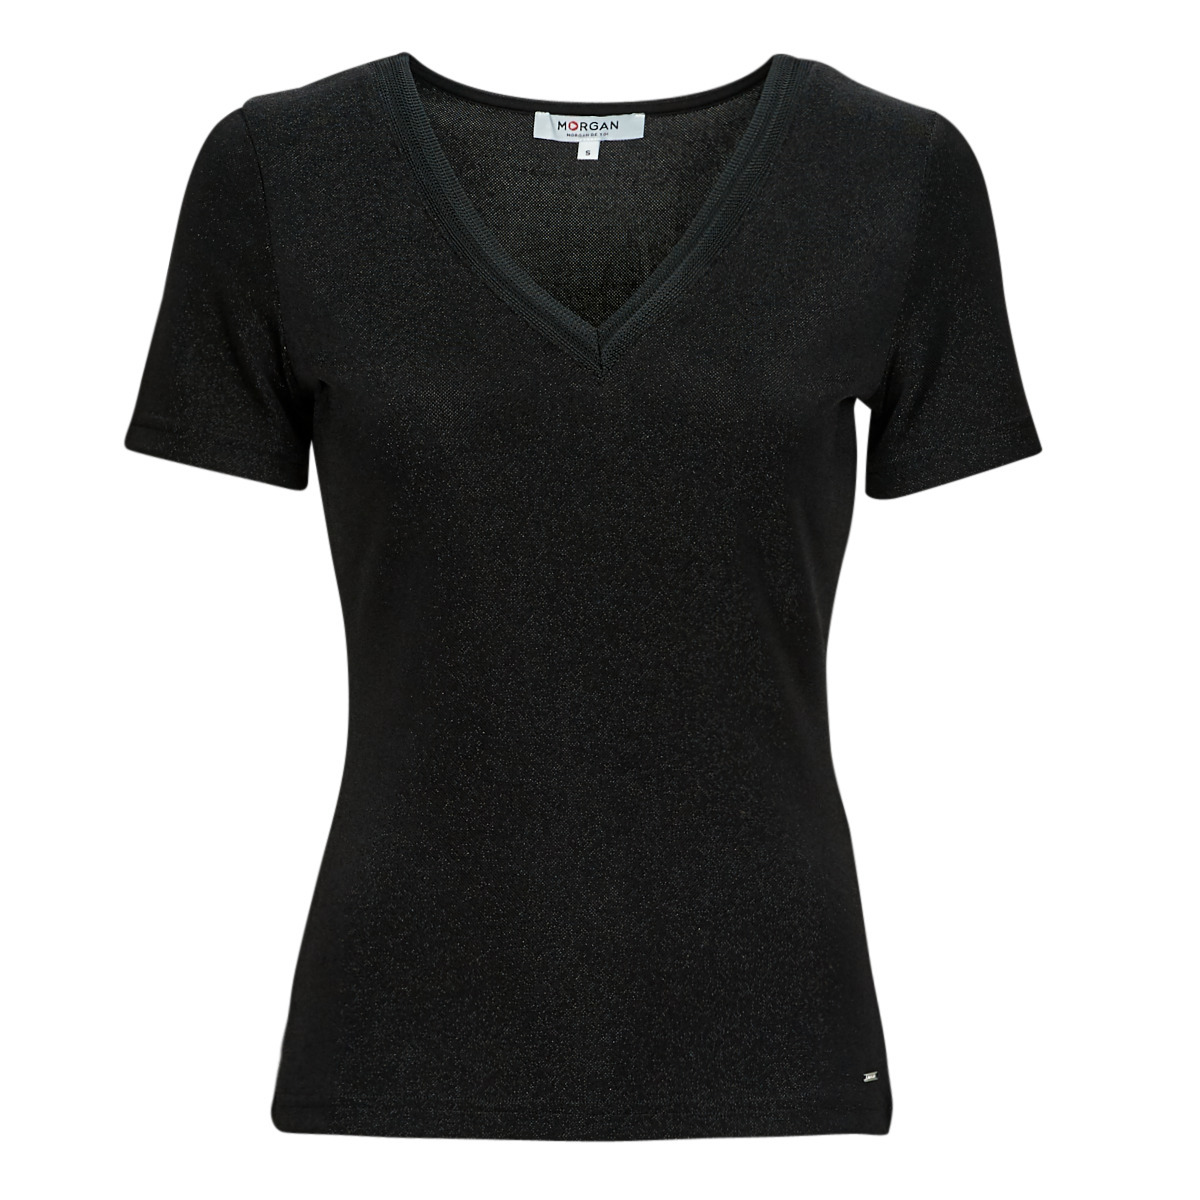 Morgan - Woman T-Shirt in Black at Spartoo GOOFASH